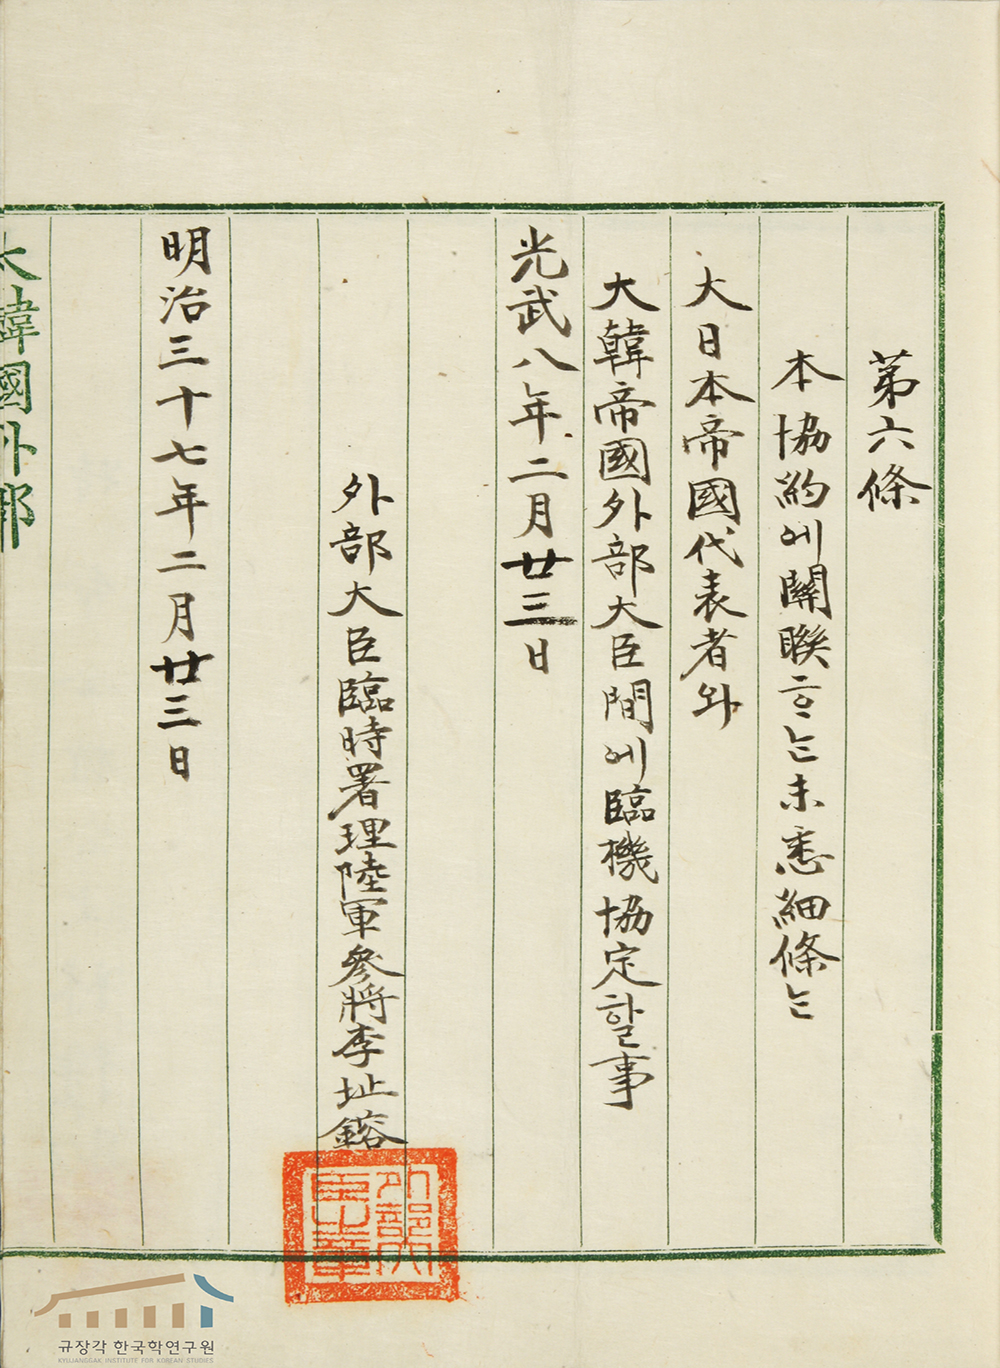 TheKorea-Japan Treaty of 1904